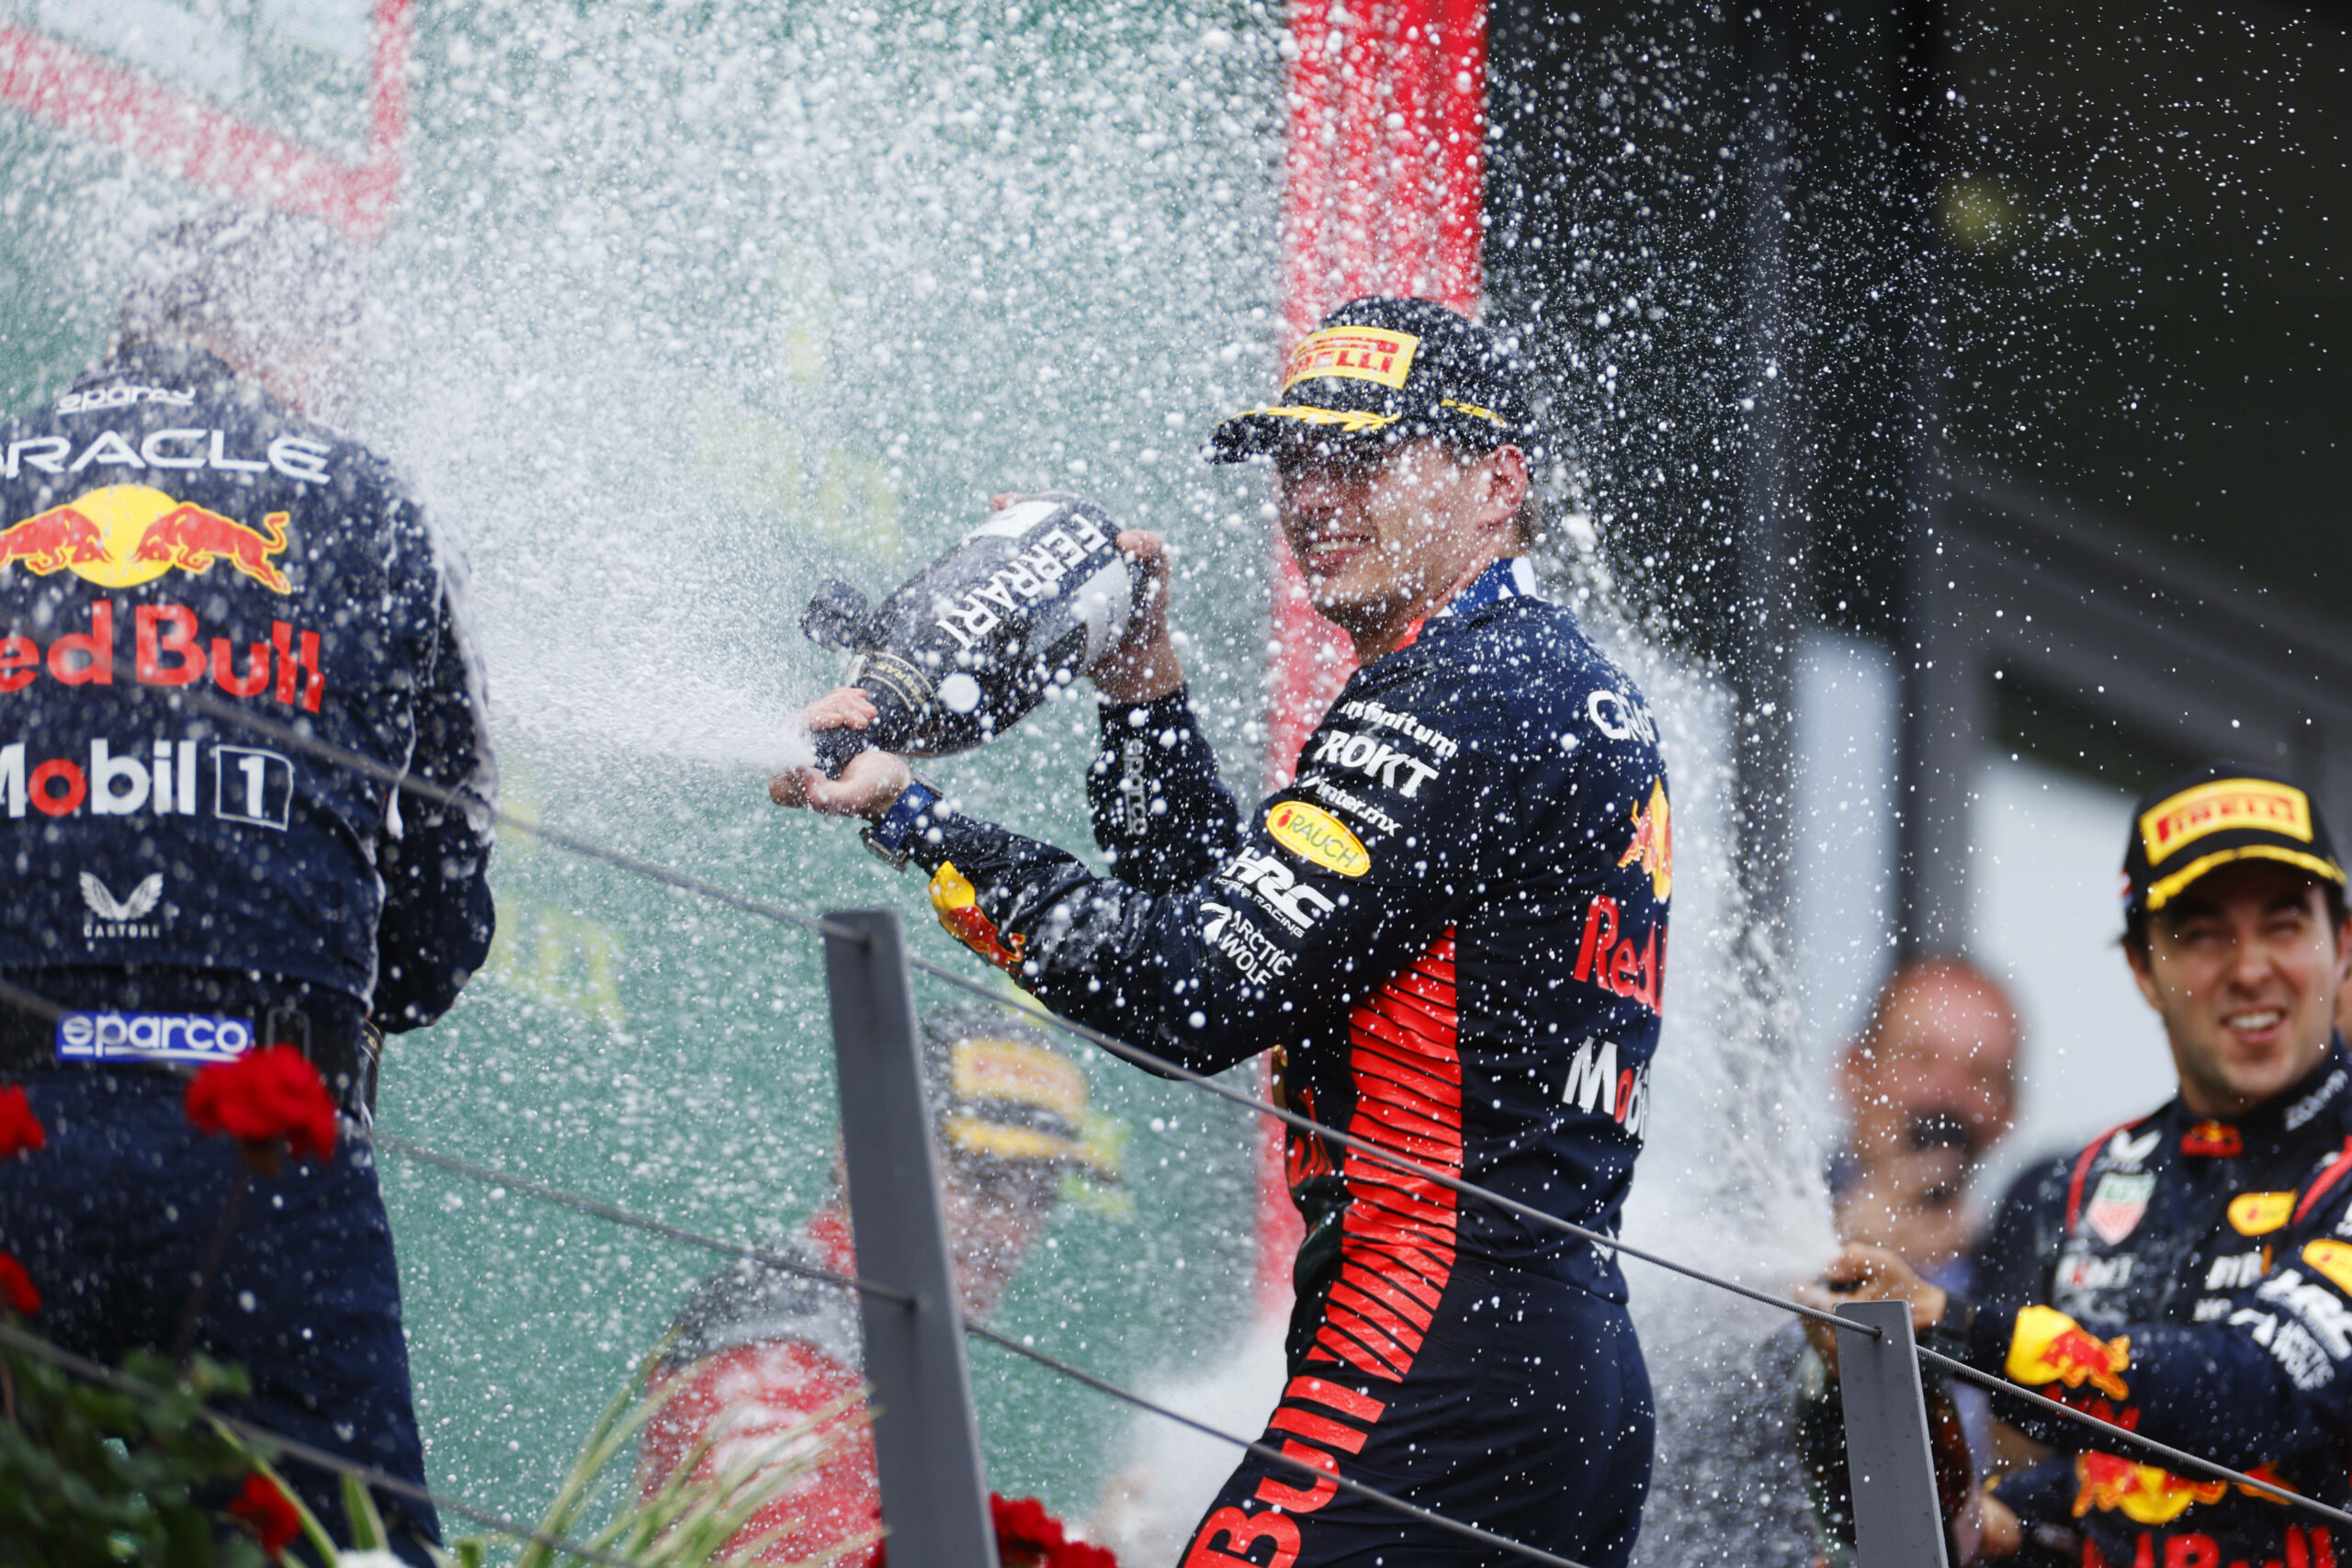 Gewohntes Bild auch in Österreich: Max Verstappen feiert nach seinem Sieg mit Champus-Flasche.